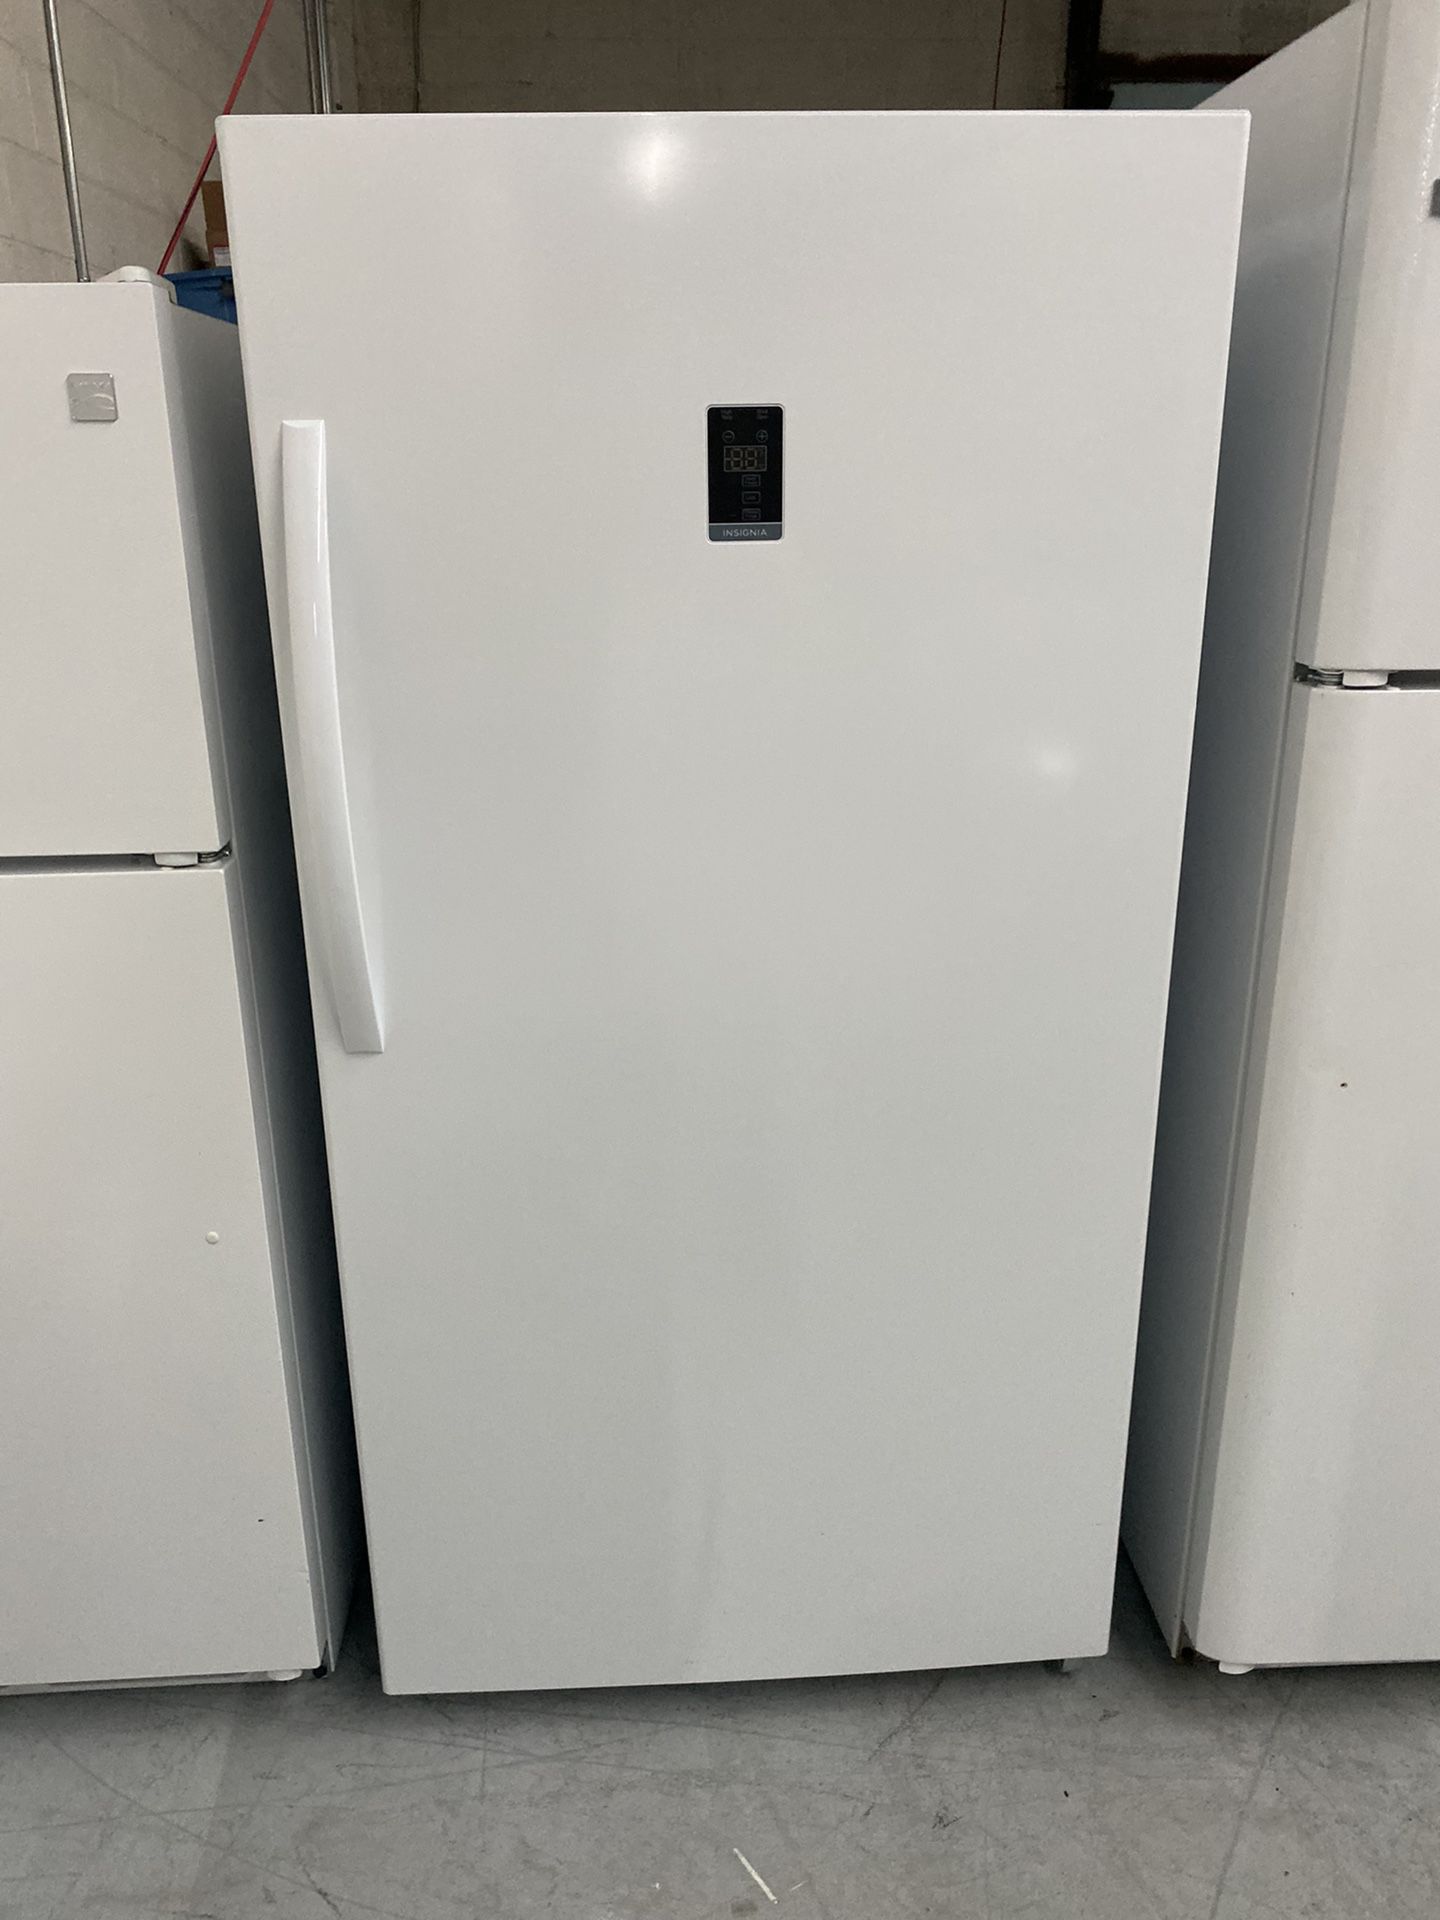 Insignia upright freezer 4 month warranty